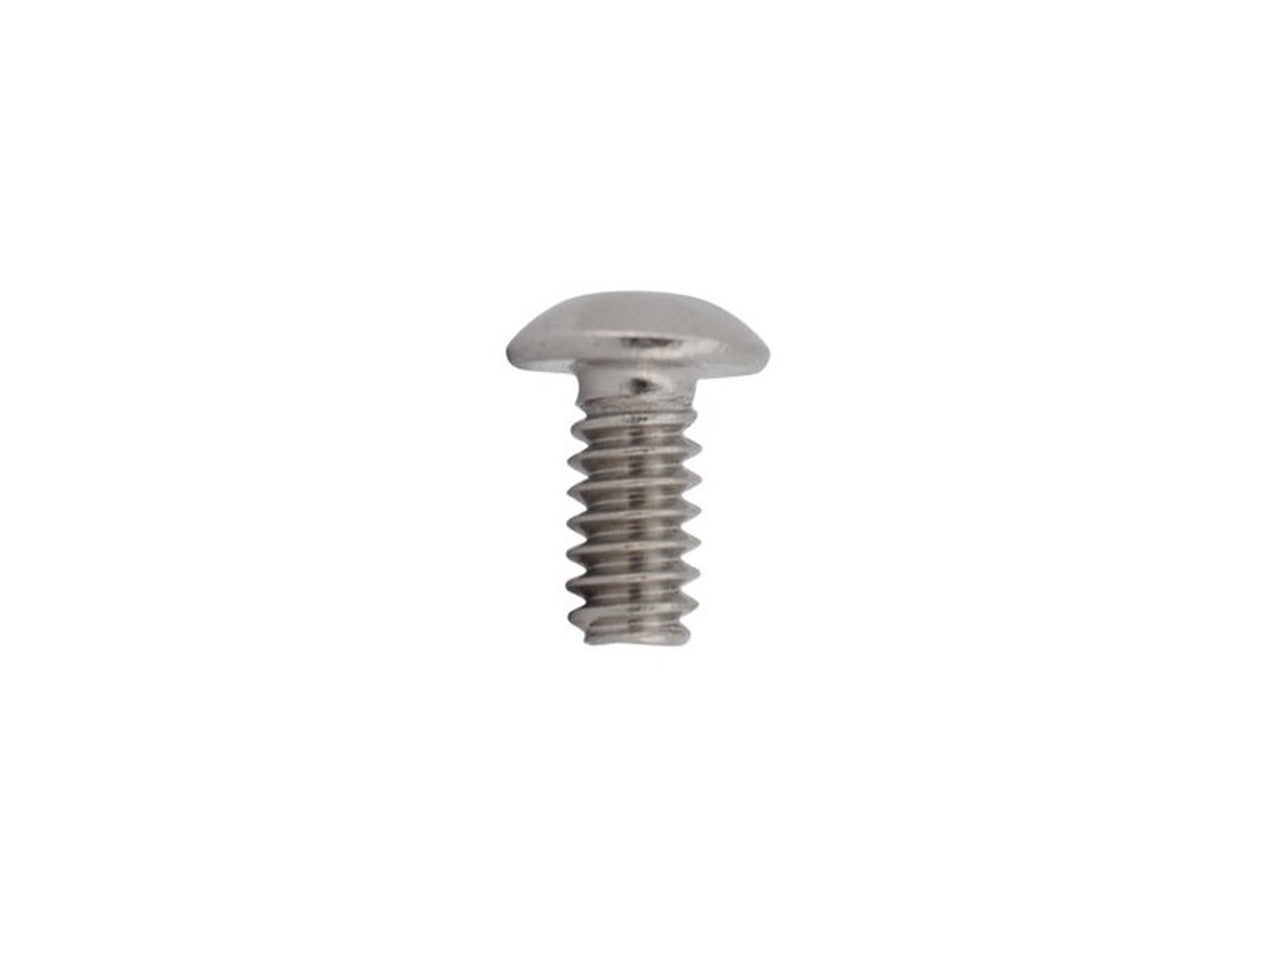 BT TM-7-Solenoid Screw (Button Head 10-24 X .250) (17658)